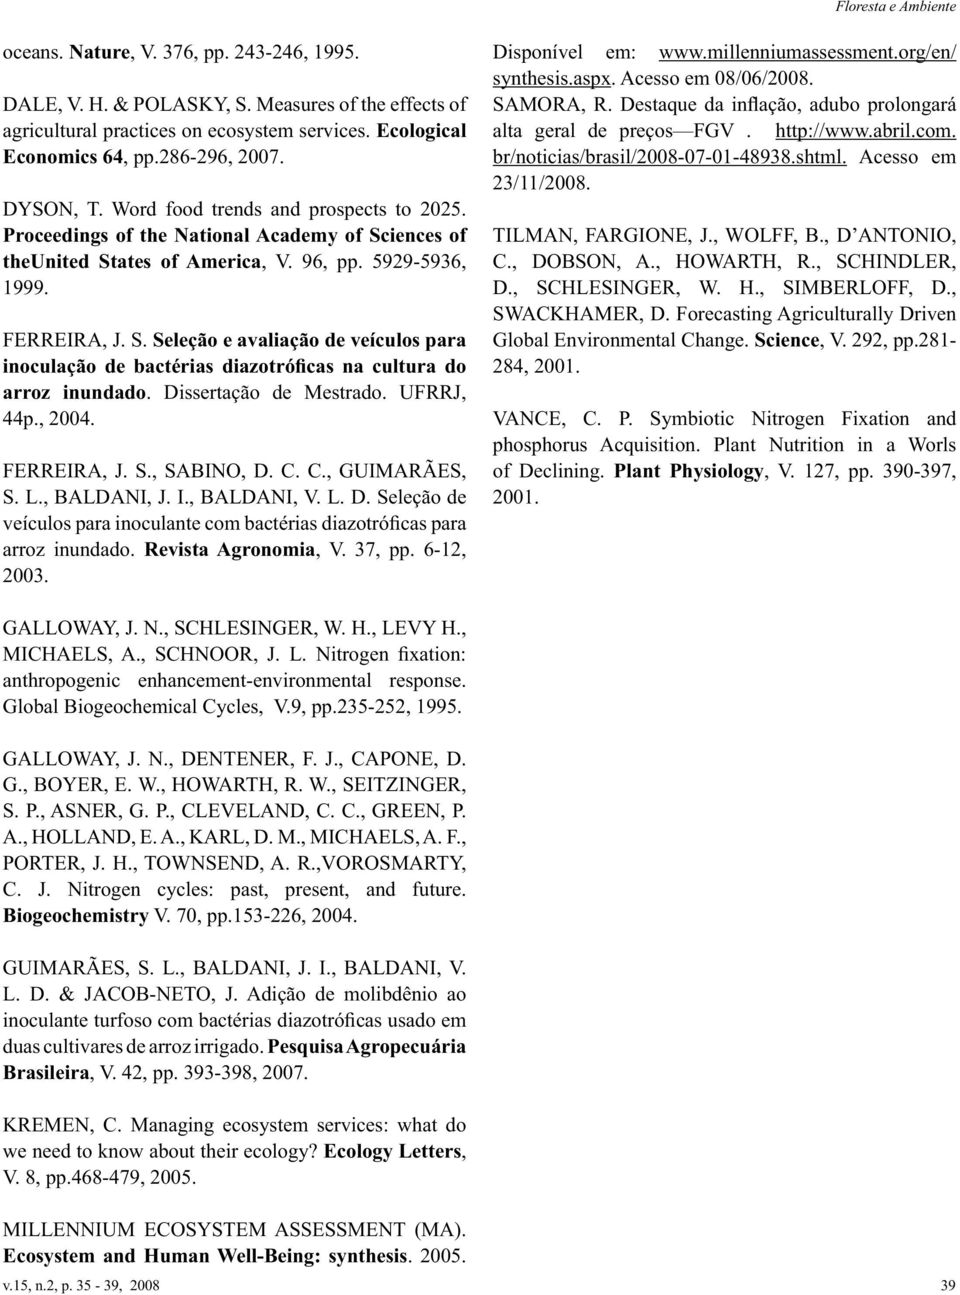 Dissertação de Mestrado. UFRRJ, 44p., 2004. FERREIRA, J. S., SABINO, D. C. C., GUIMARÃES, S. L., BALDANI, J. I., BALDANI, V. L. D. Seleção de veículos para inoculante com bactérias diazotróficas para arroz inundado.